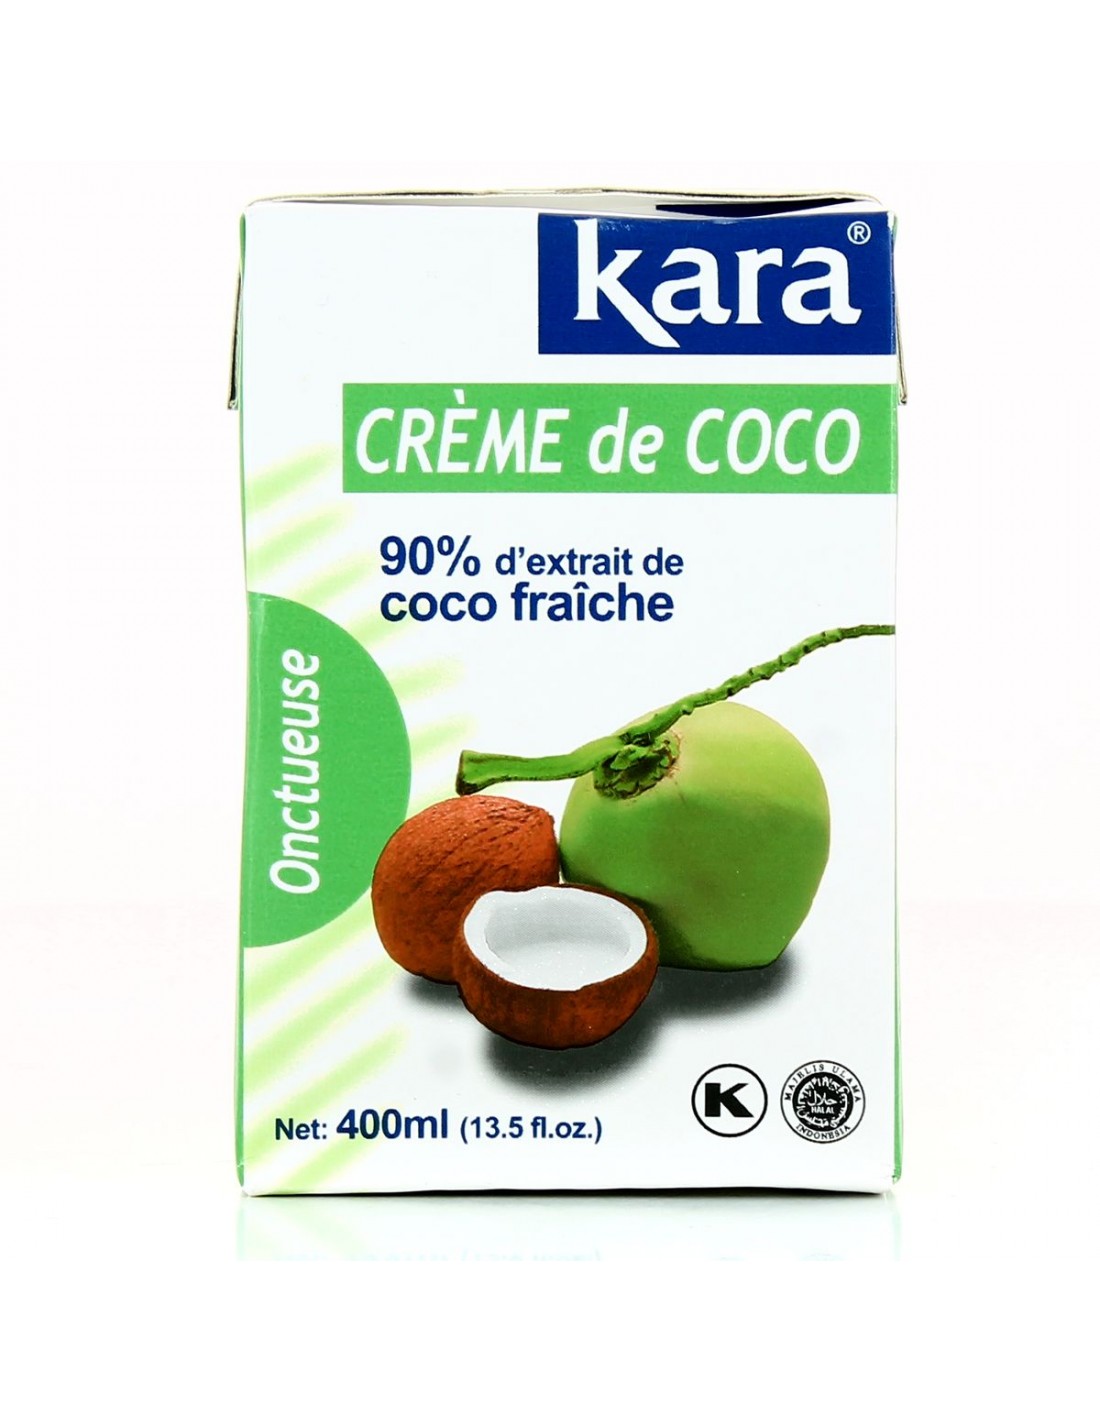 Lait de coco - 400 ml